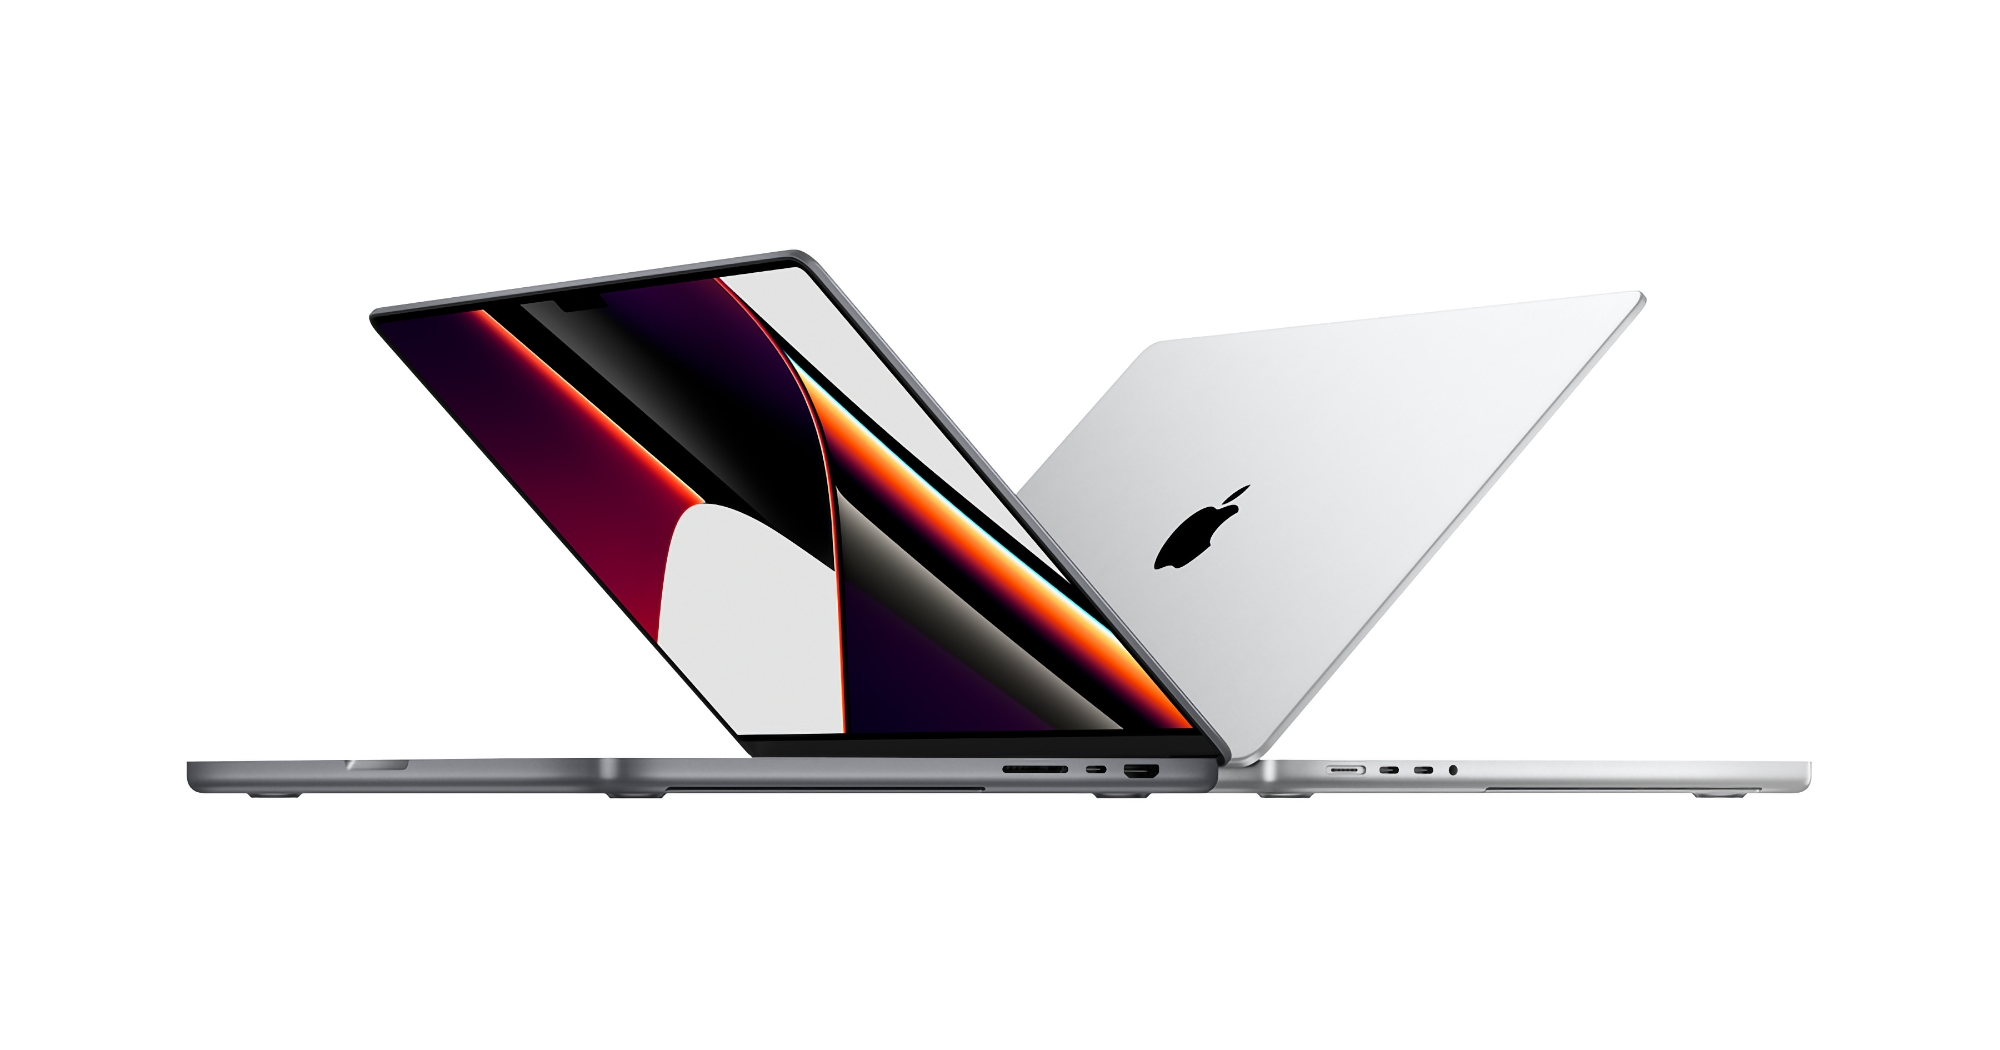 Apple obniżyło ceny odnowionych MacBooków Pro z układami M1 Pro i M1 Max, laptopy kosztują teraz o 15% mniej niż nowe modele